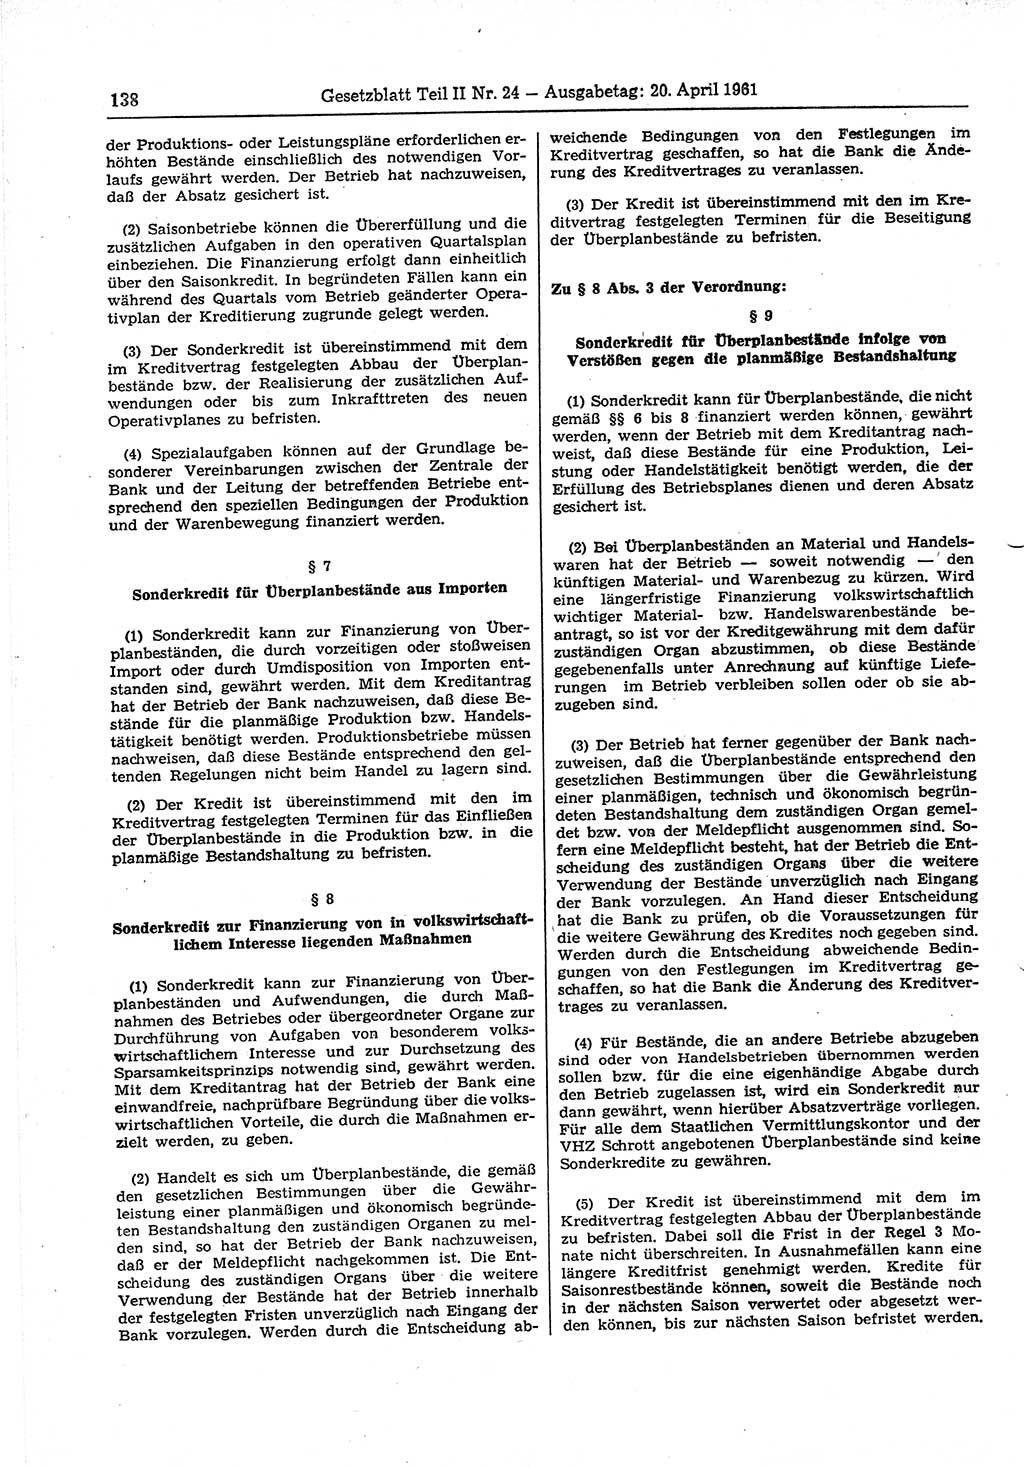 Gesetzblatt (GBl.) der Deutschen Demokratischen Republik (DDR) Teil ⅠⅠ 1961, Seite 138 (GBl. DDR ⅠⅠ 1961, S. 138)